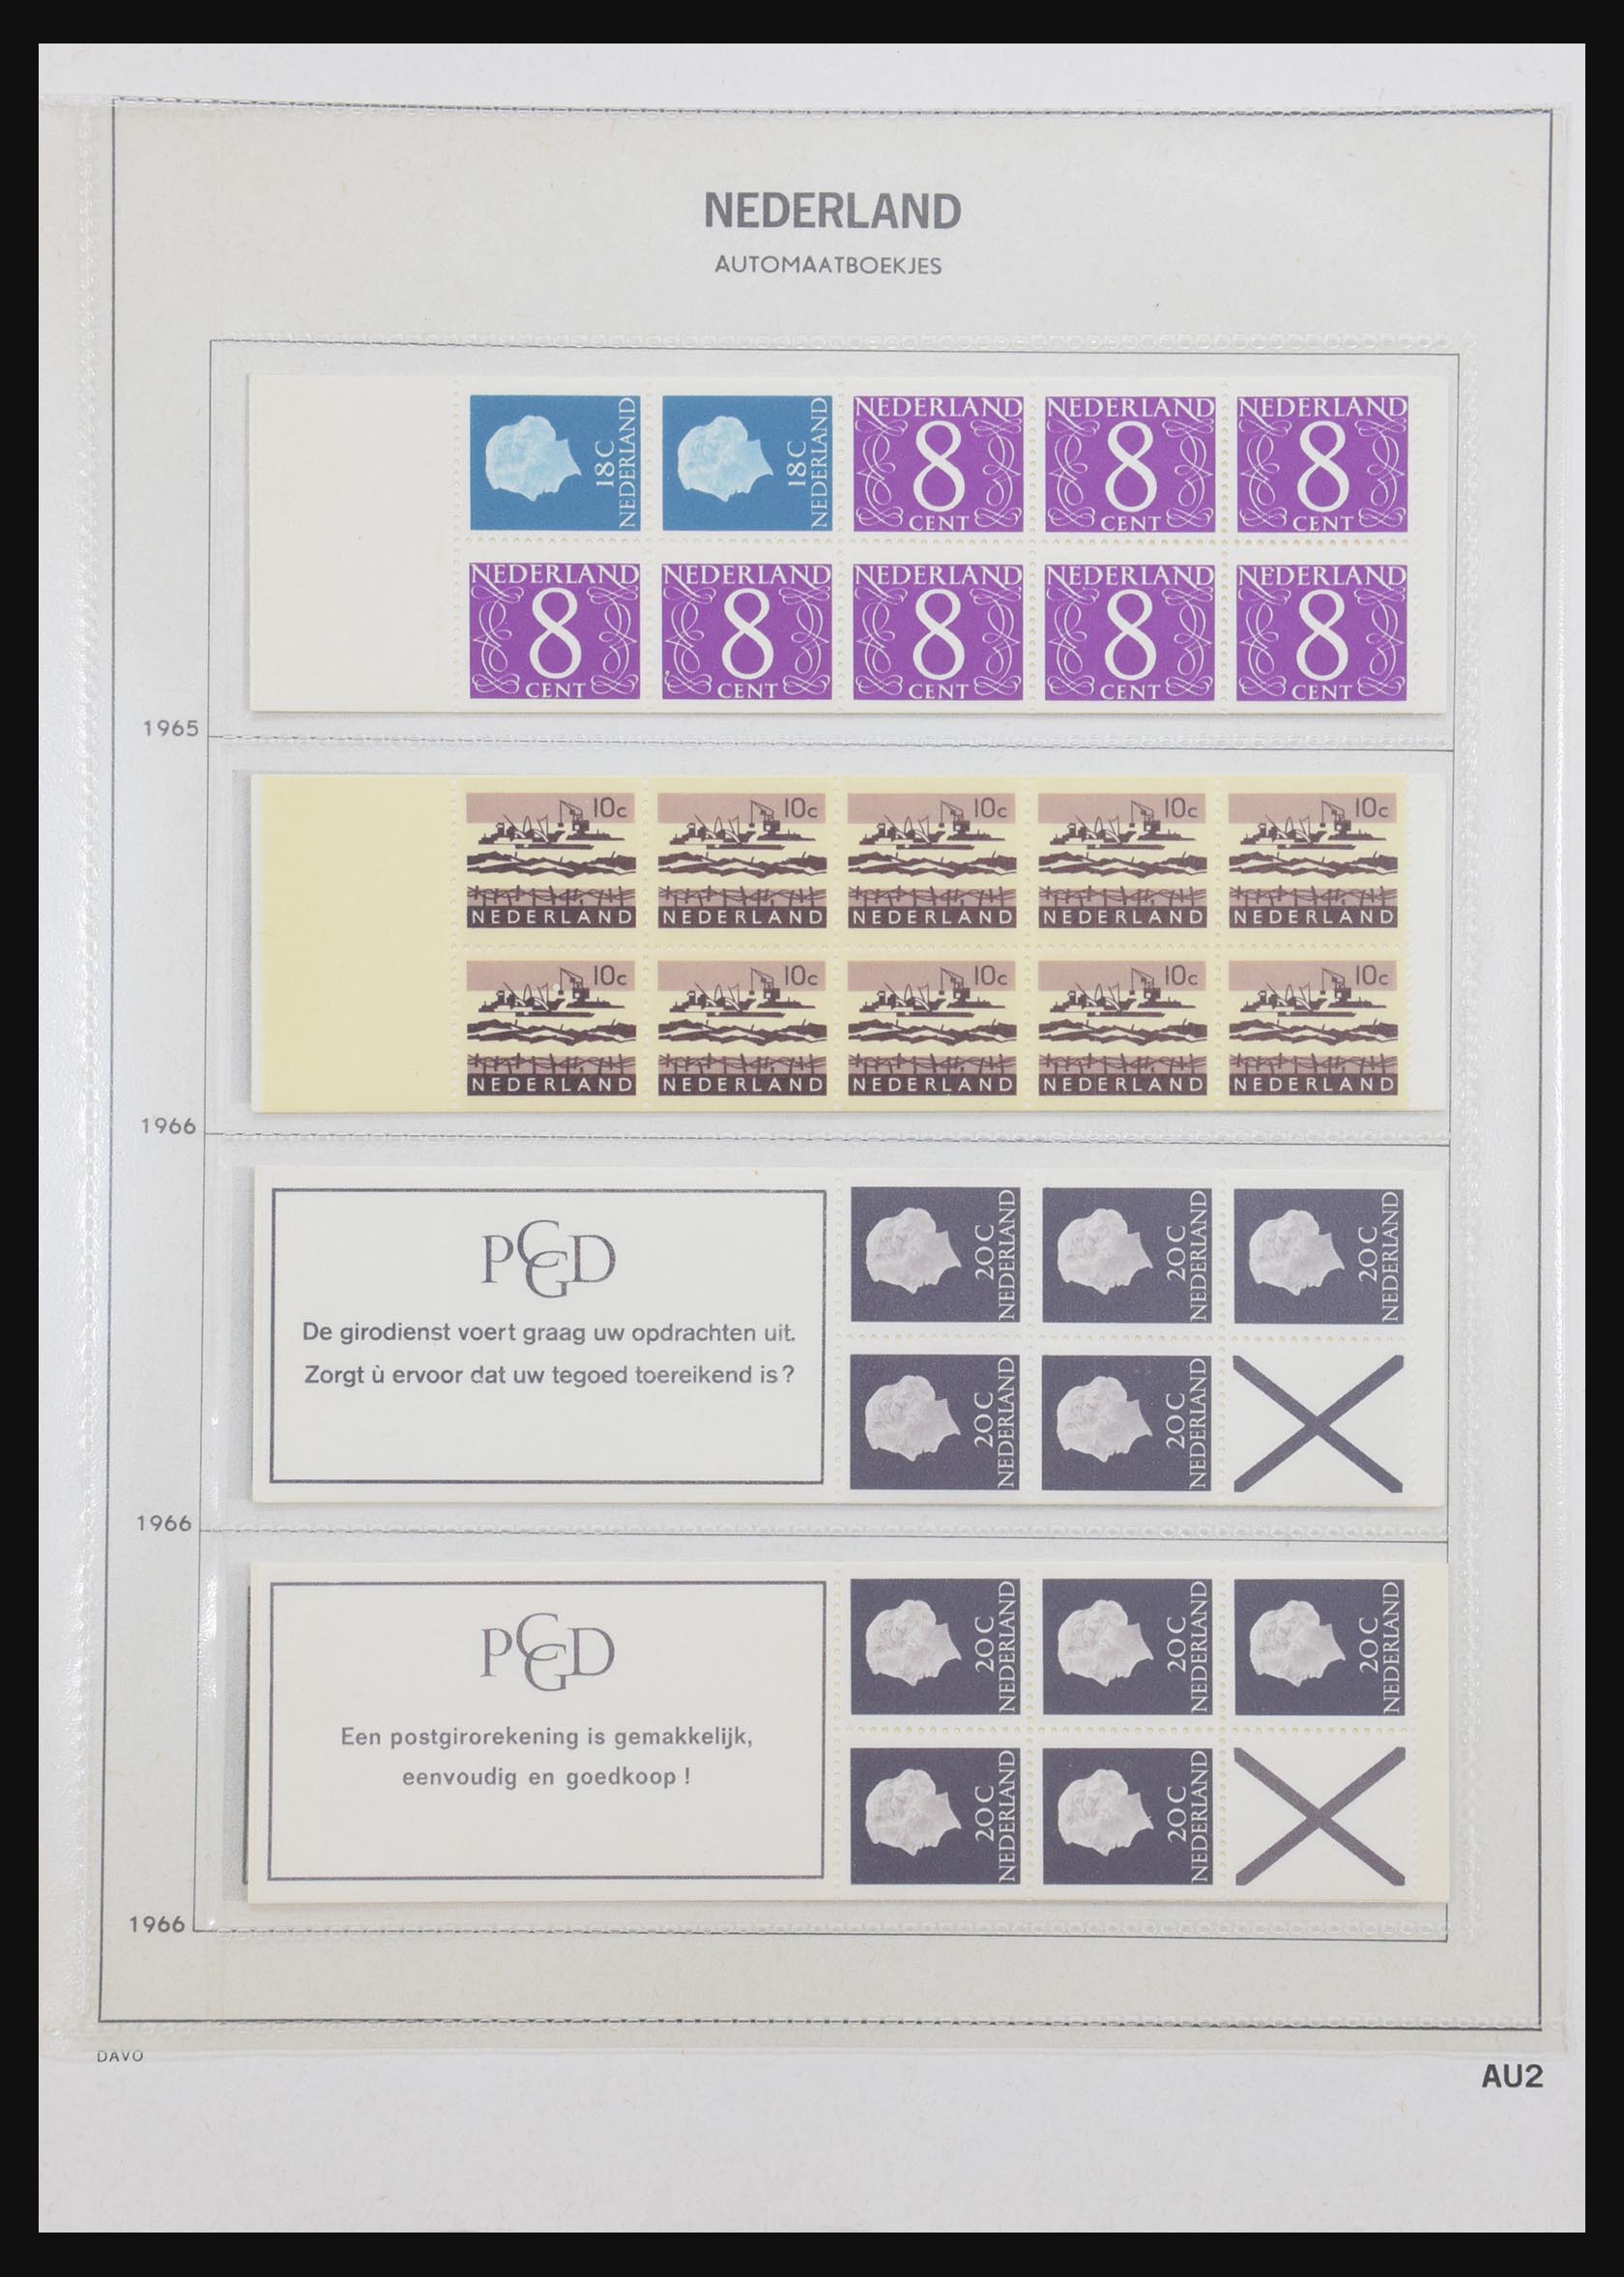 31159 002 - 31159 Netherlands stamp booklets 1964-1994.